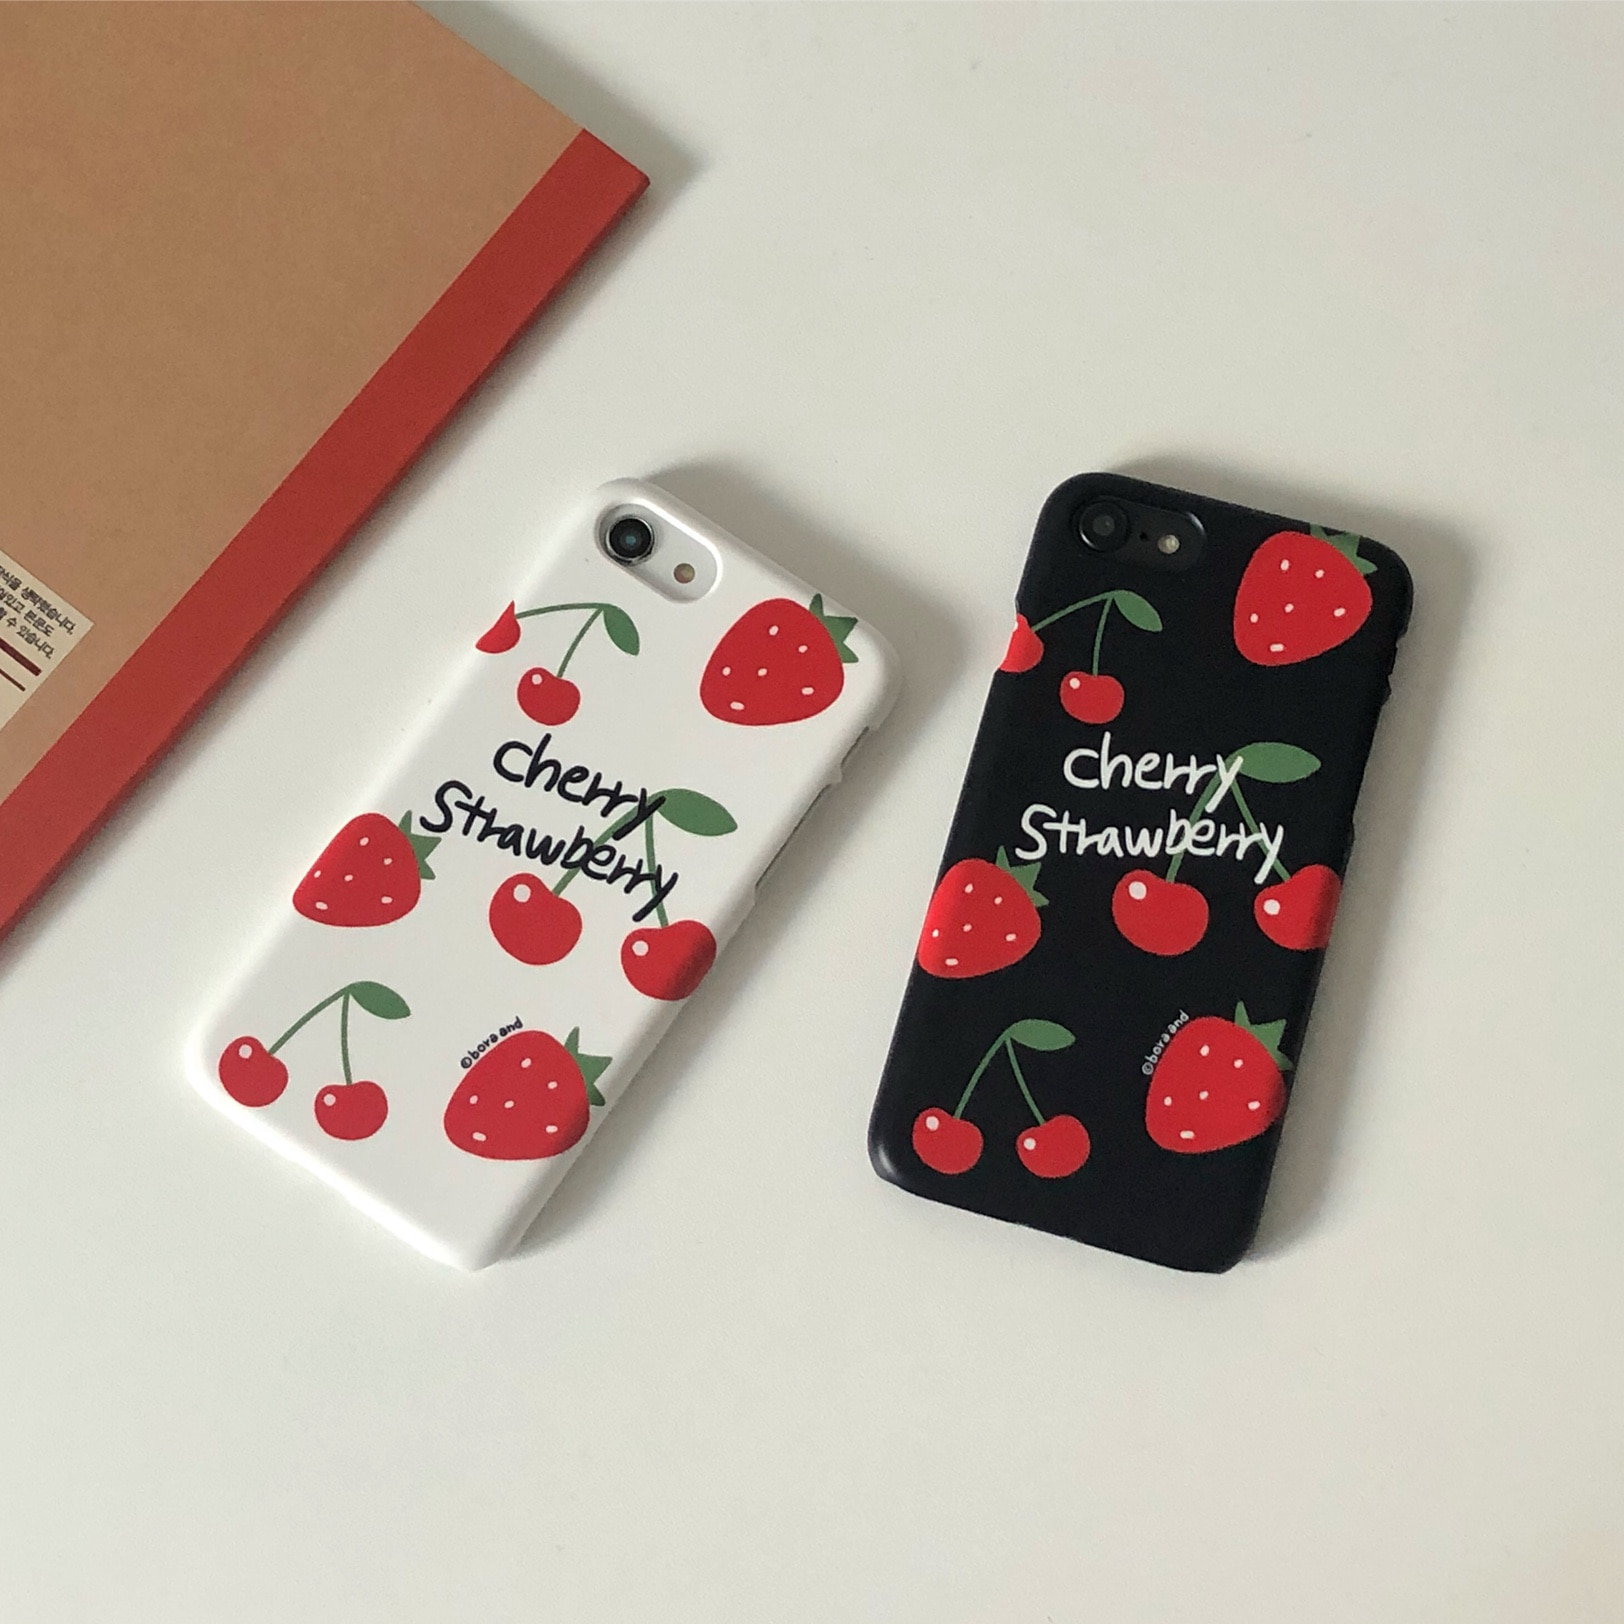 Cherry x strawberry (무광하드)